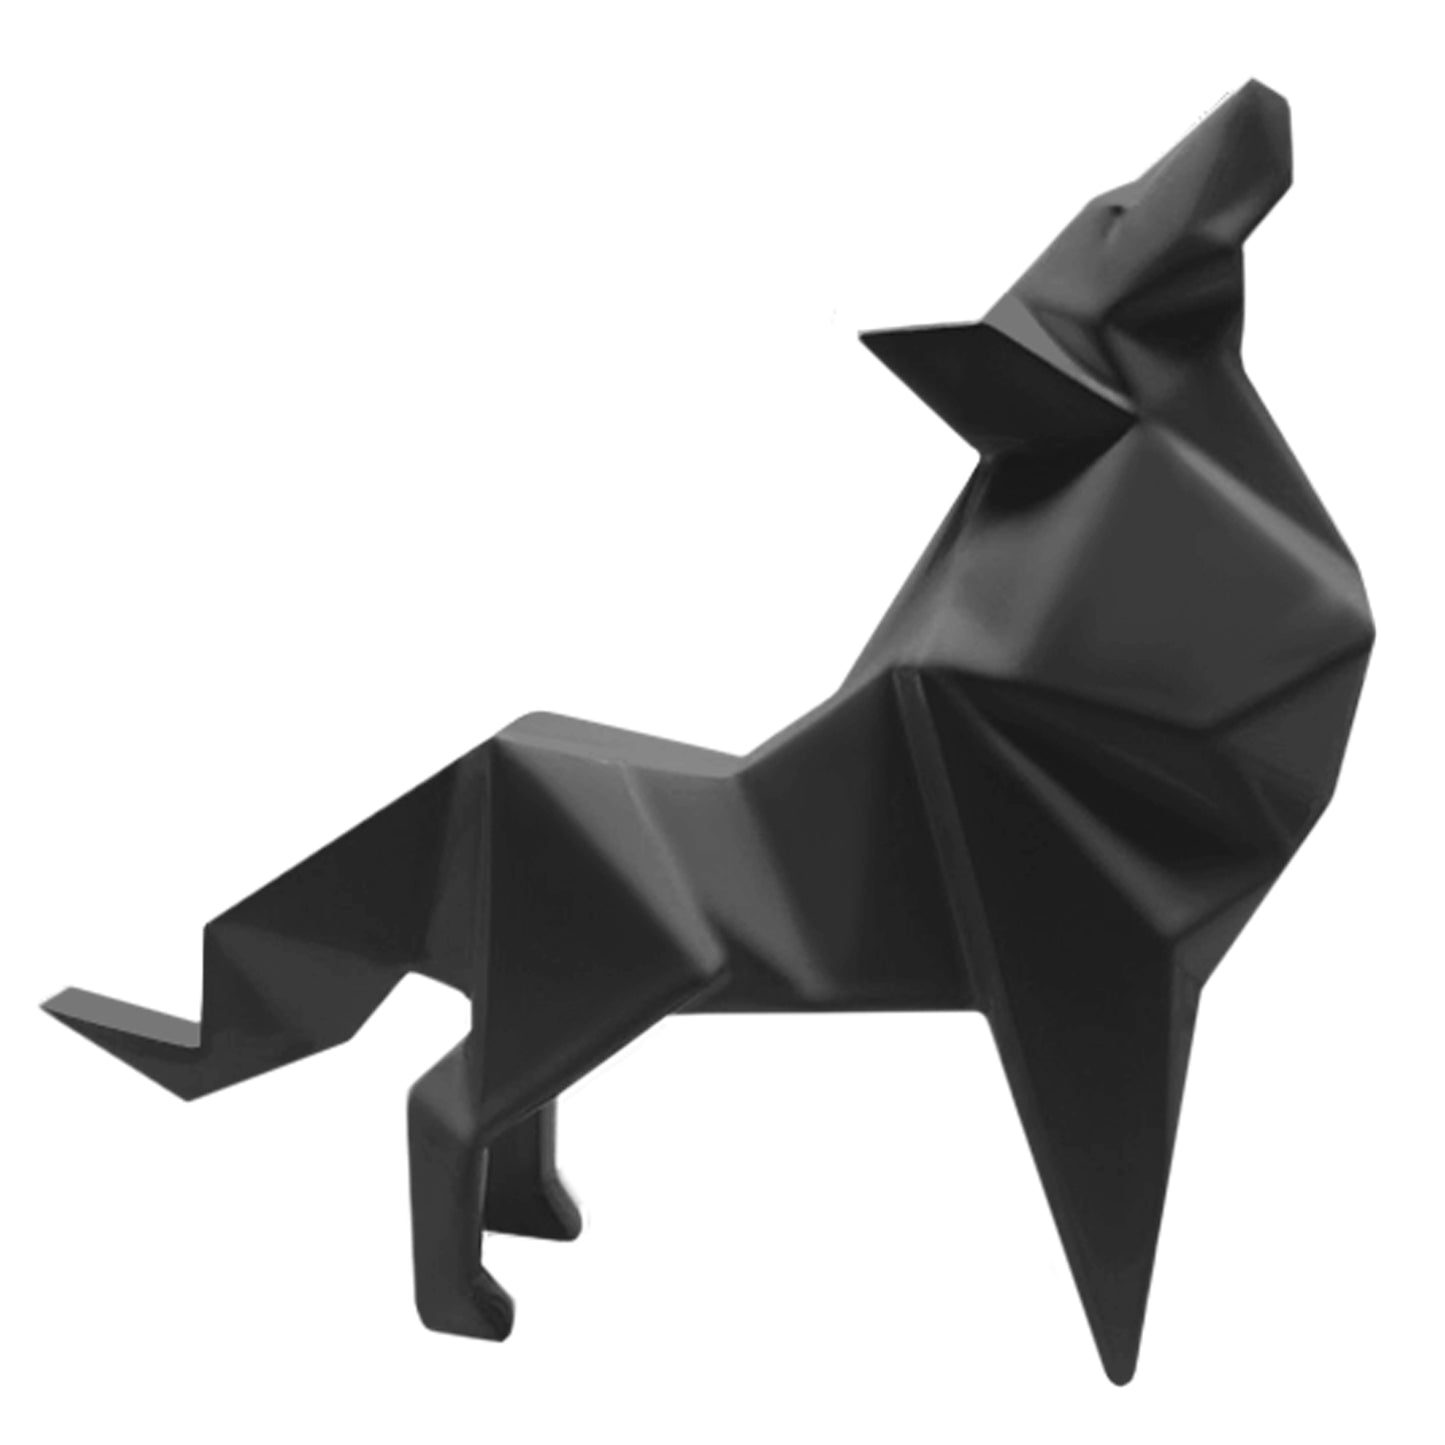 Lobo Origami Cerámica